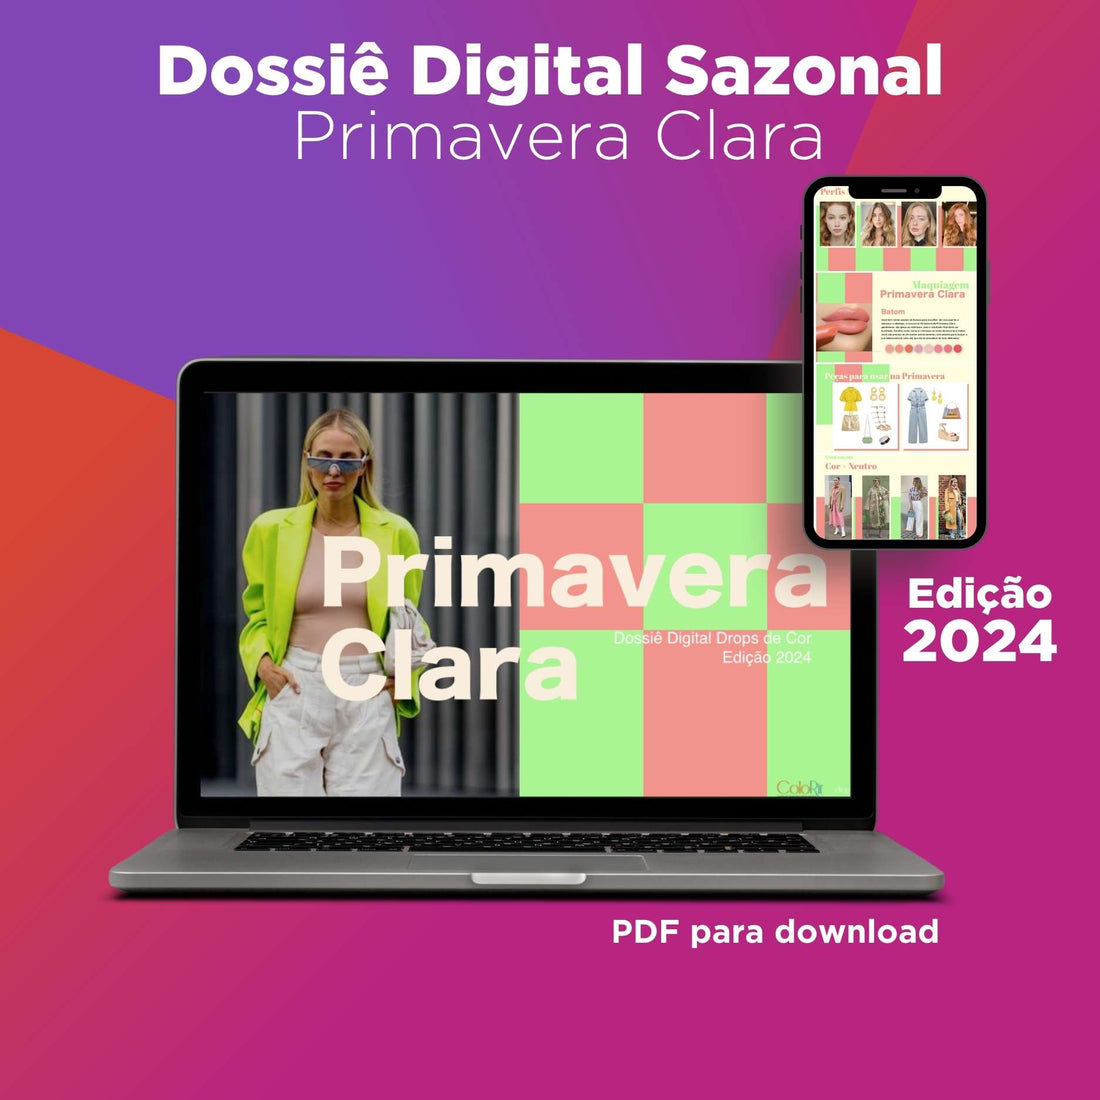 Dossier Digital de Temporada - Primavera Clara - Edición 2024